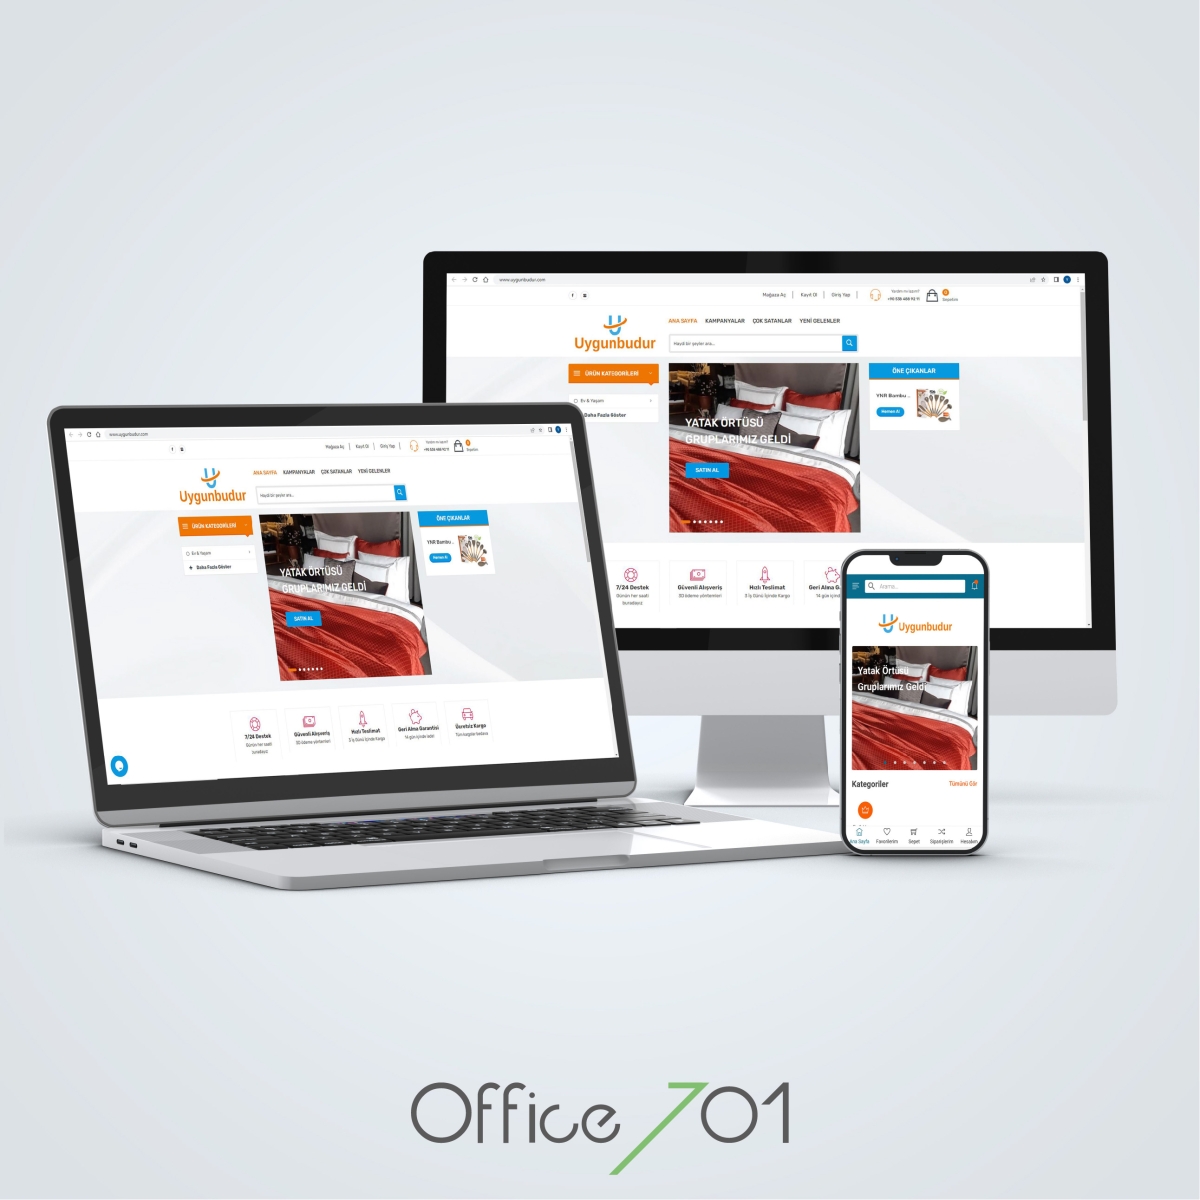 Office701 | Uygunbudur | E-Commerce Website